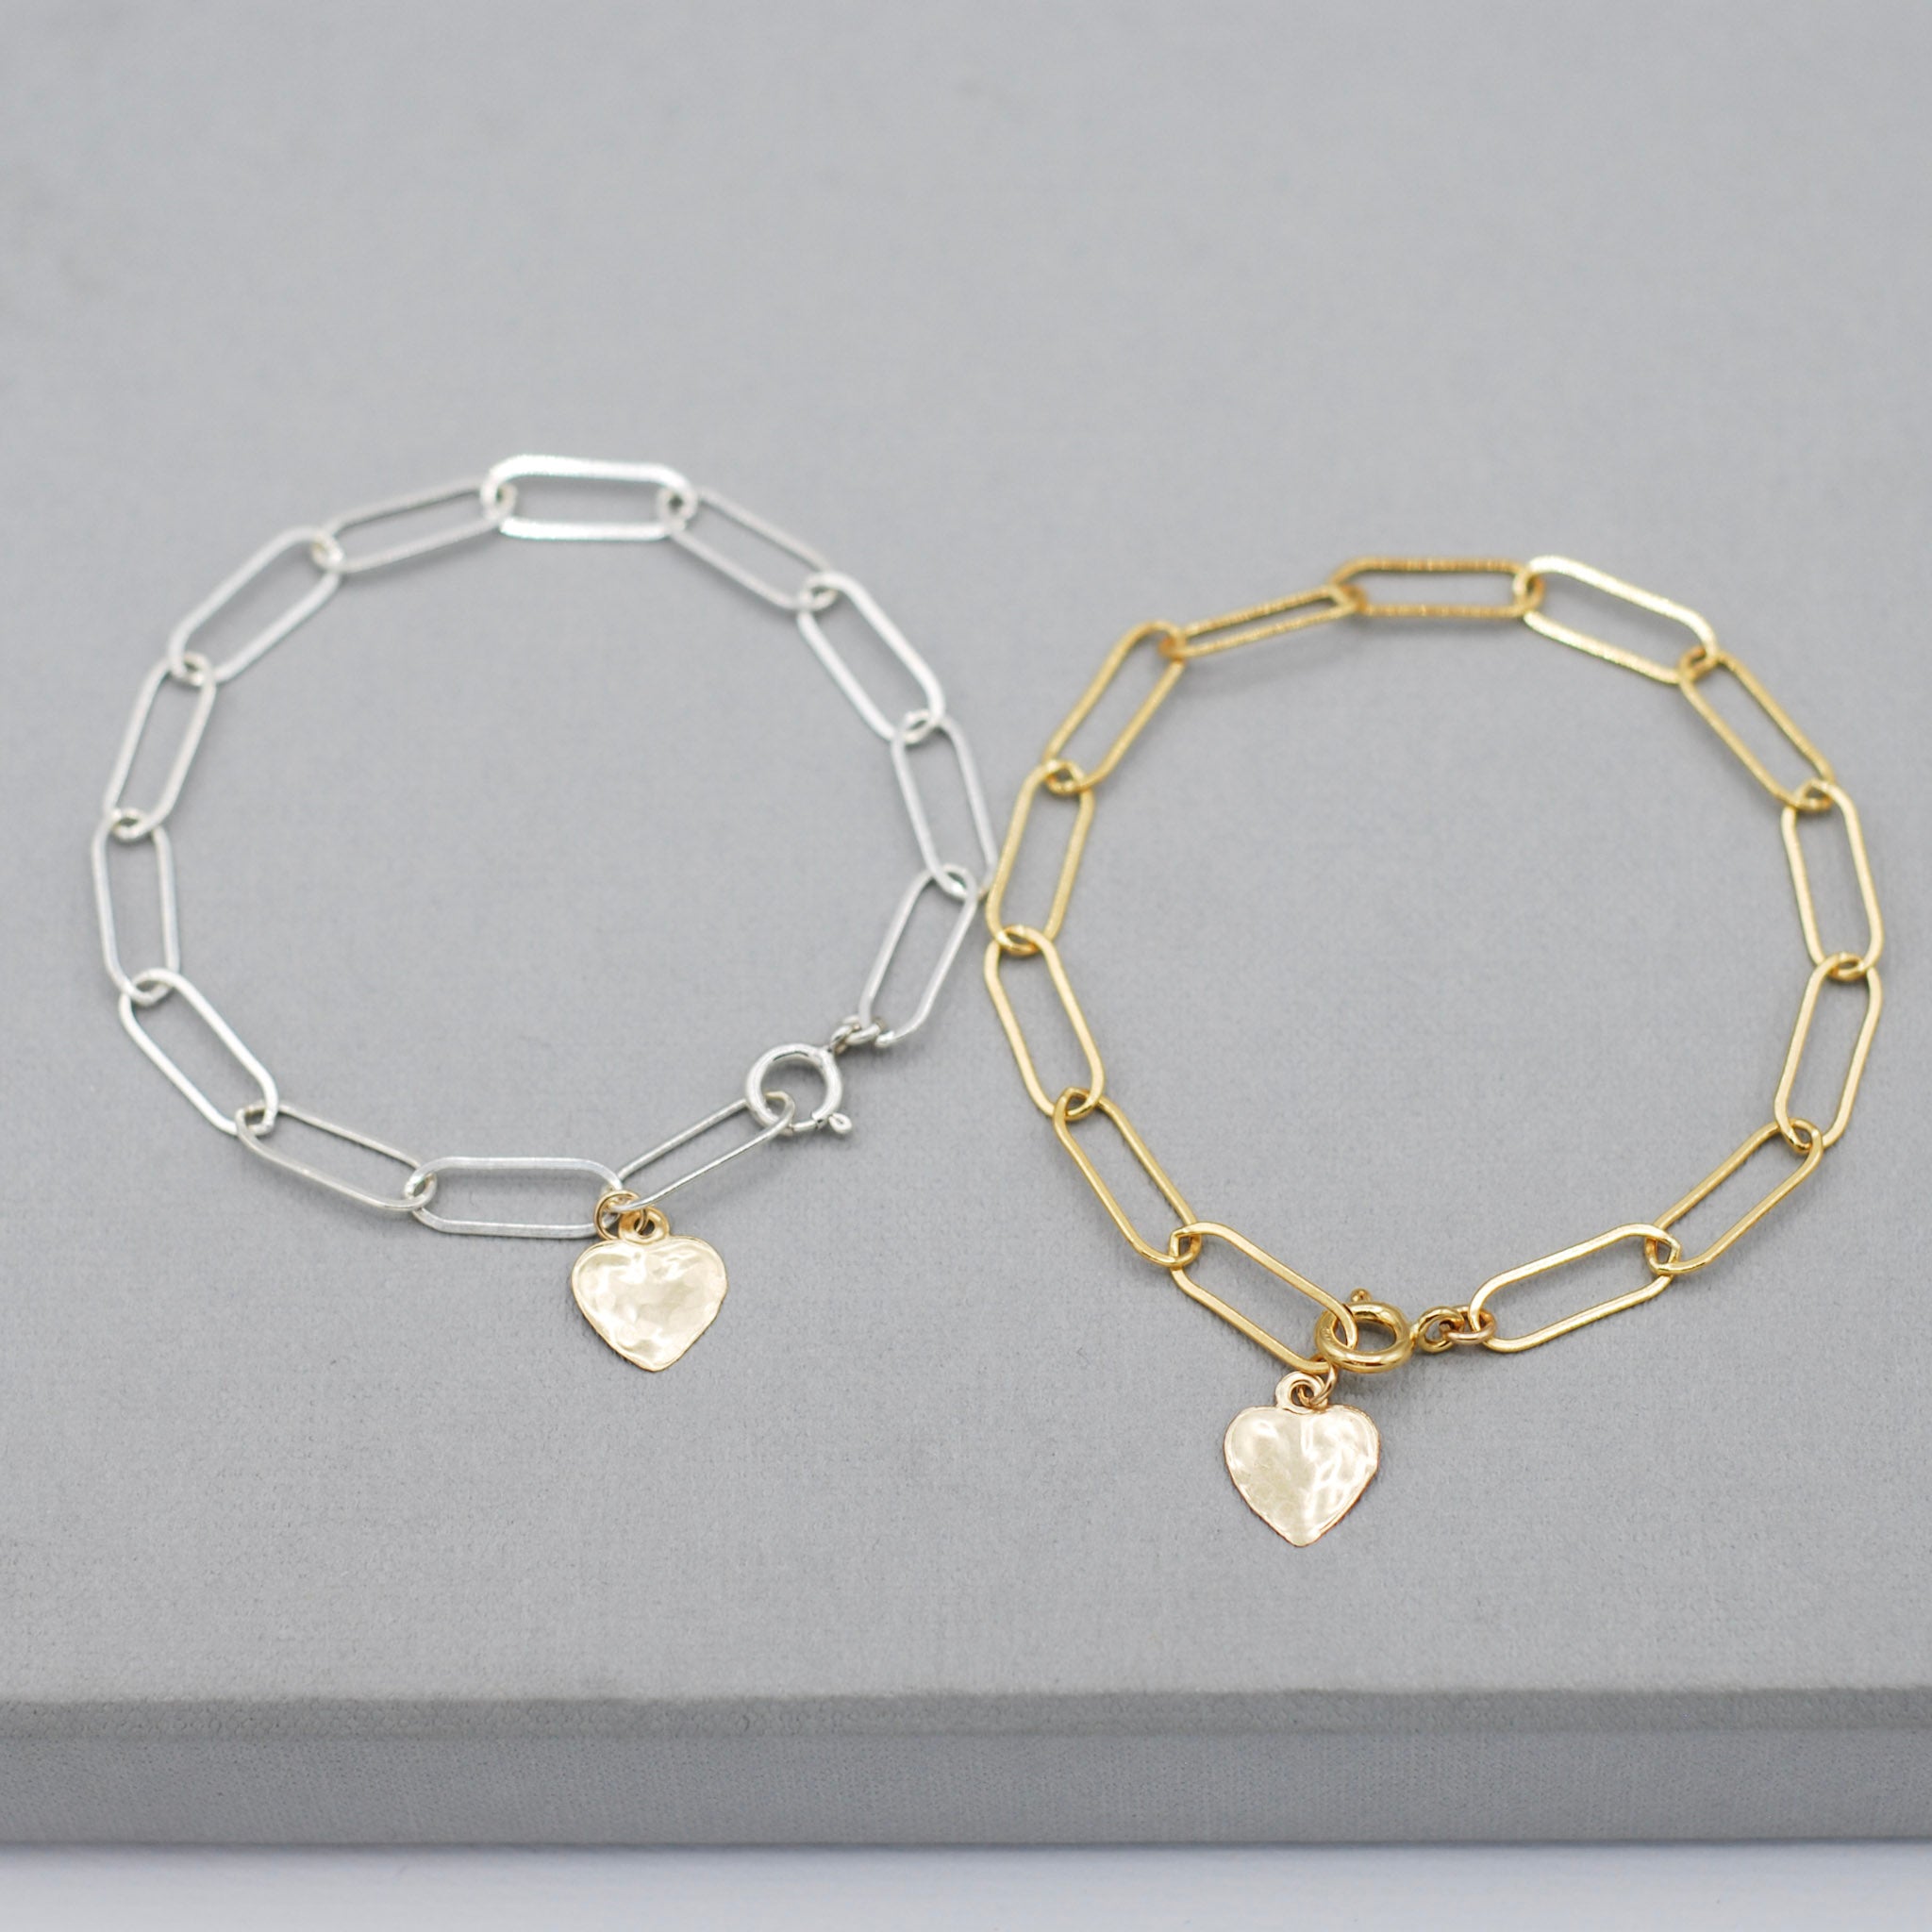 Sterling Silver Paper Clip Heart Charm Bracelet - Jewel Ya